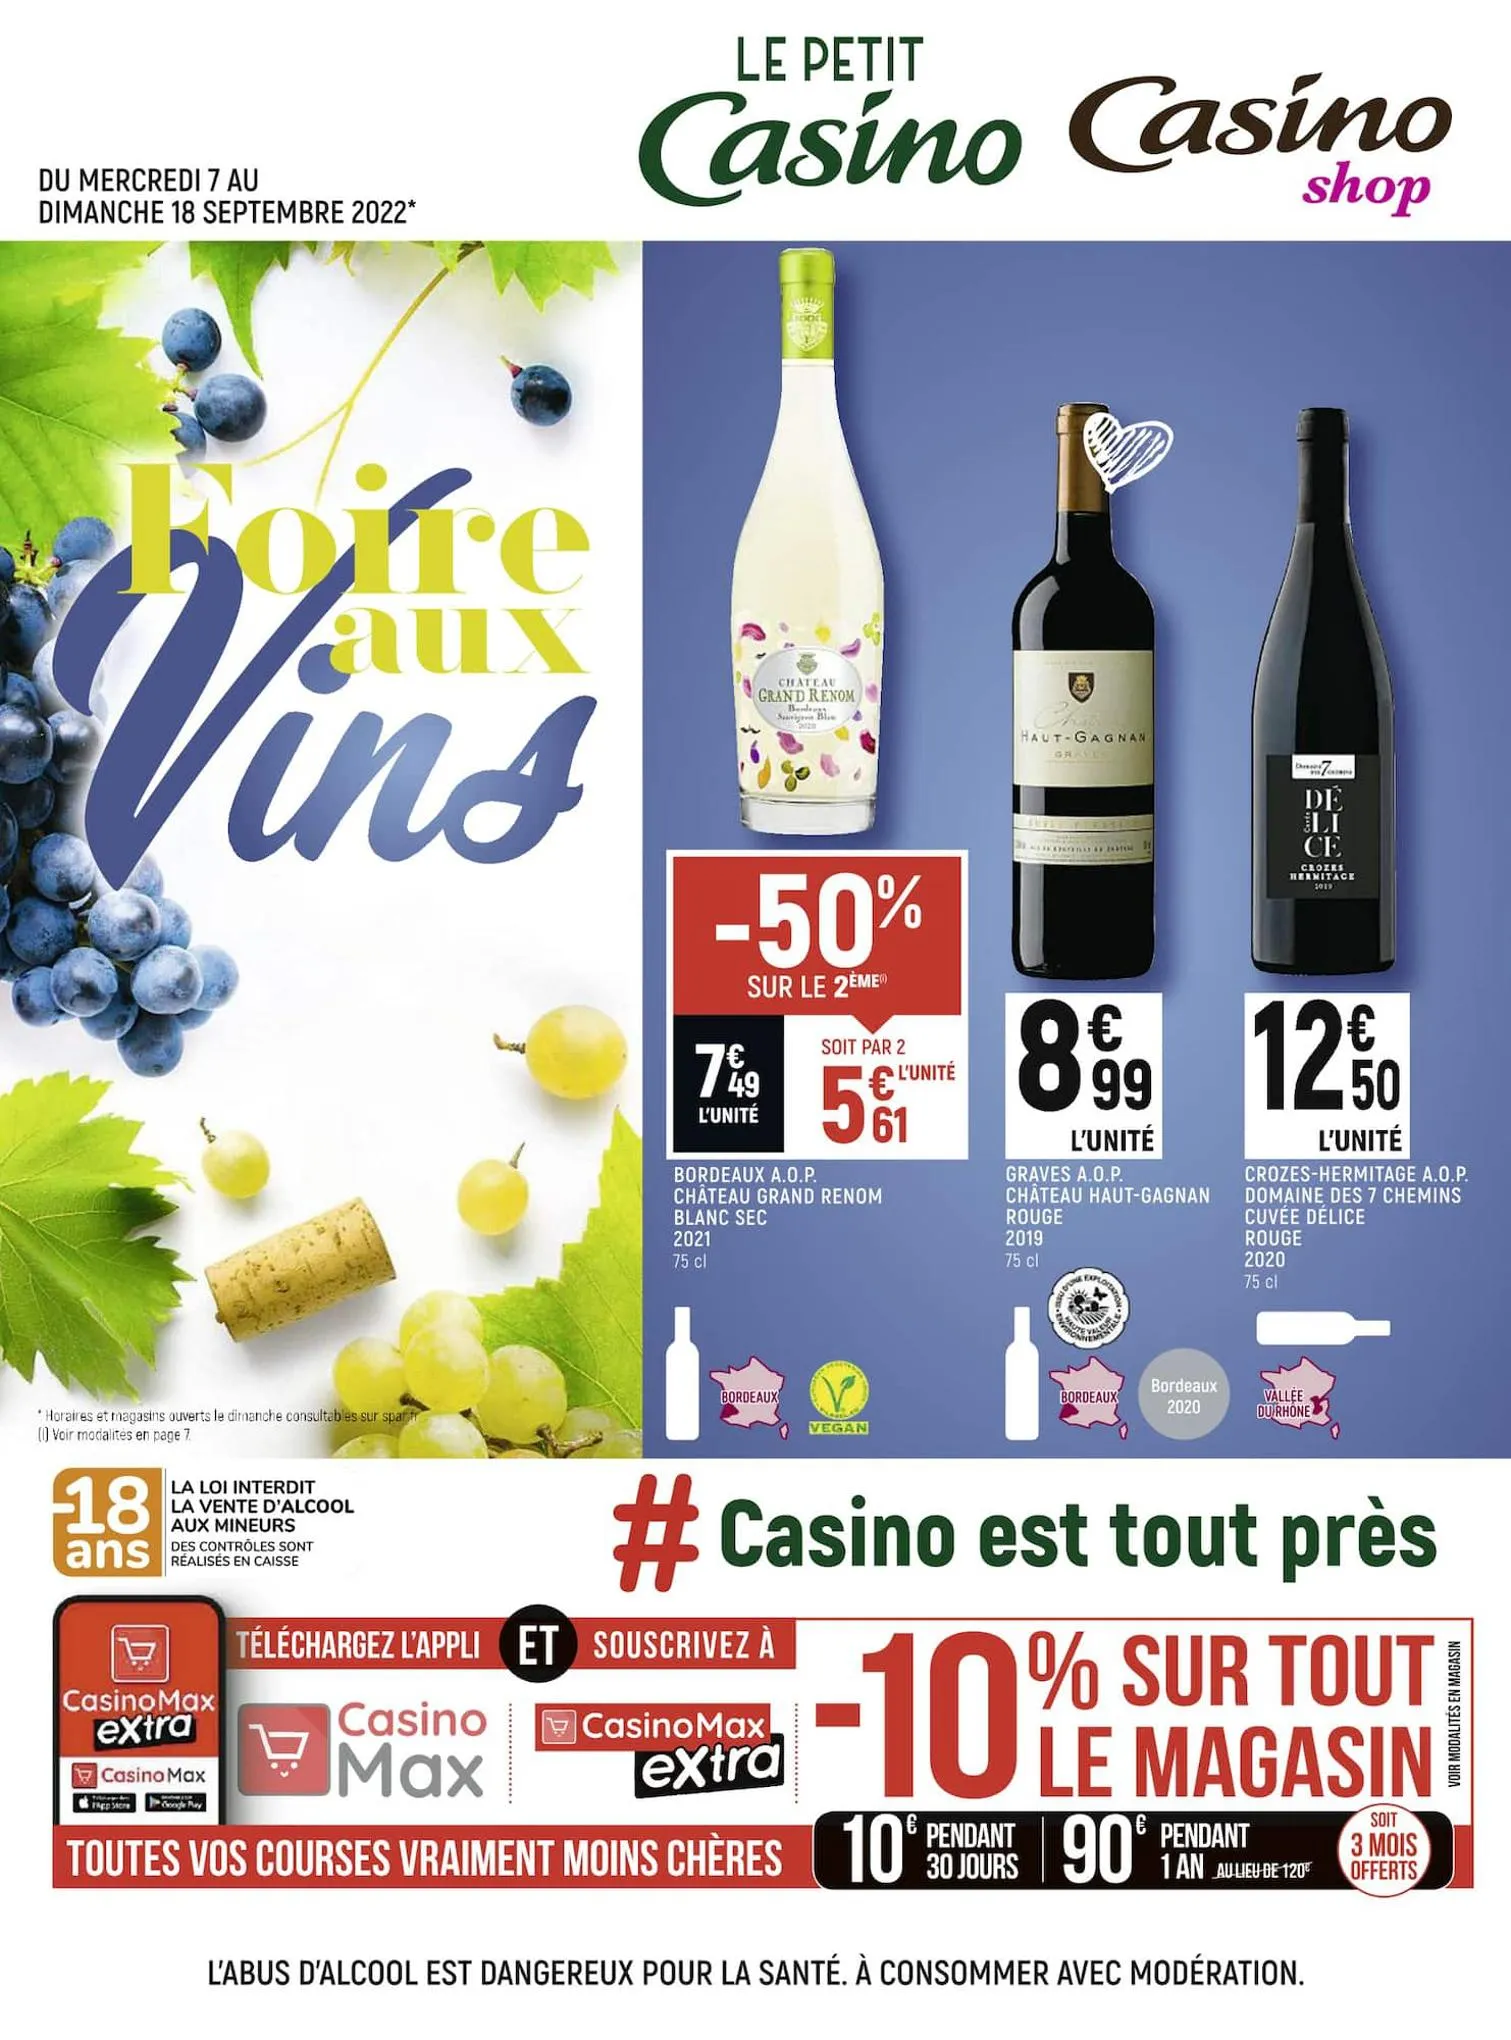 Catalogue Foire aux vins, page 00001